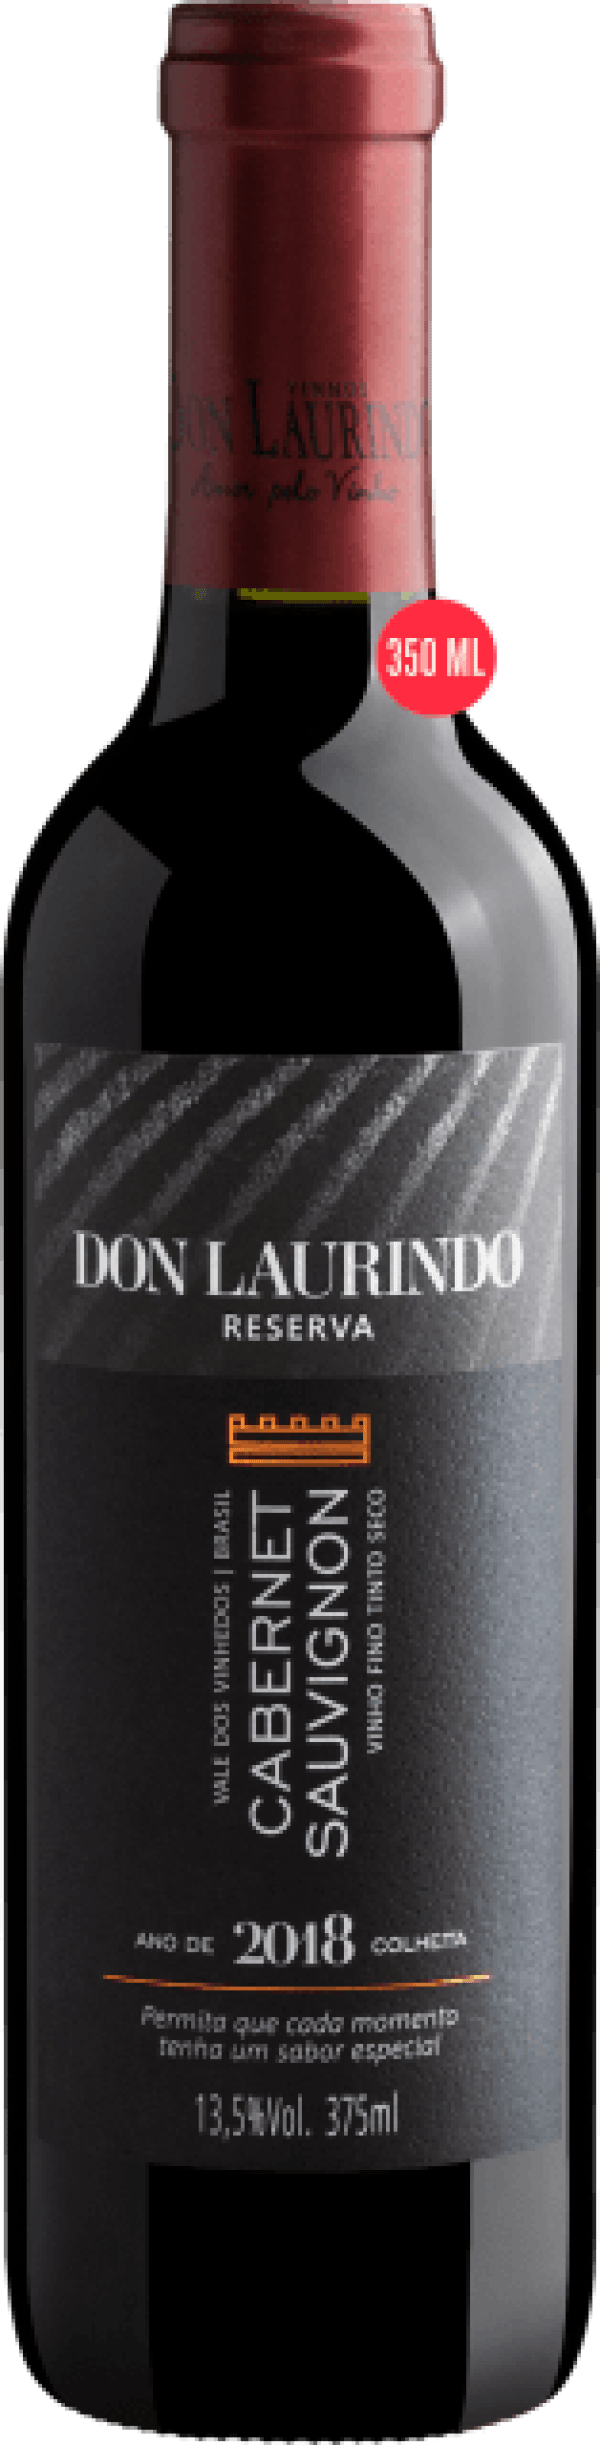 Don Laurindo Reserva Cabernet Sauvignon 2018 375mL